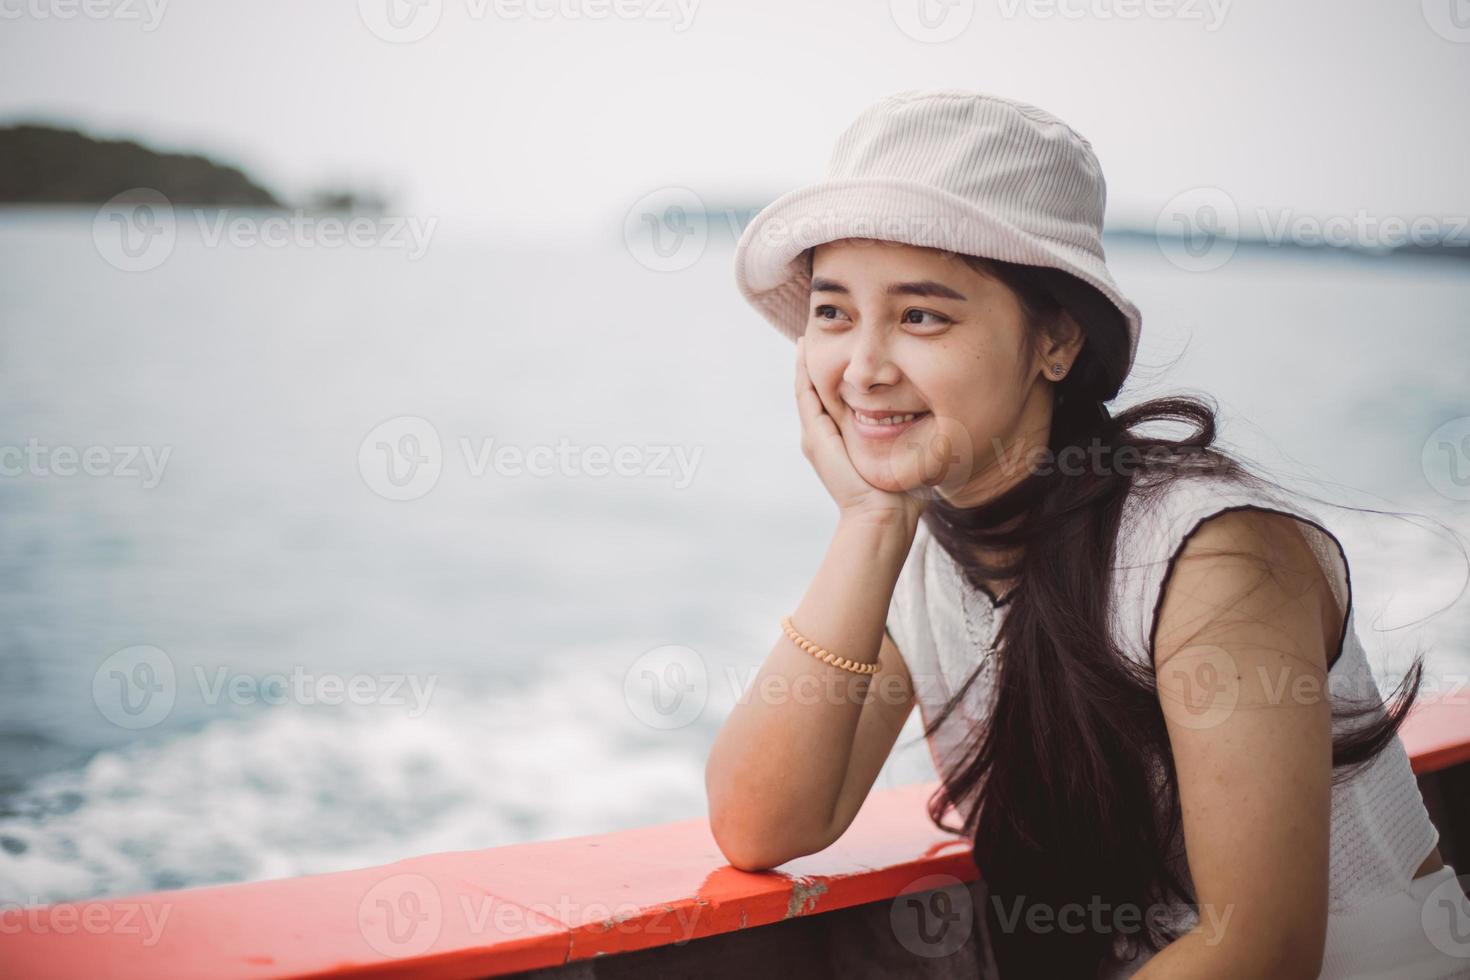 frau, die sich draußen auf einem kleinen boot mitten auf dem meer entspannt. schöne reife frau genießt sommerseereise, frau auf seite eines kleinen bootes. Phuket-Meer Thailand foto